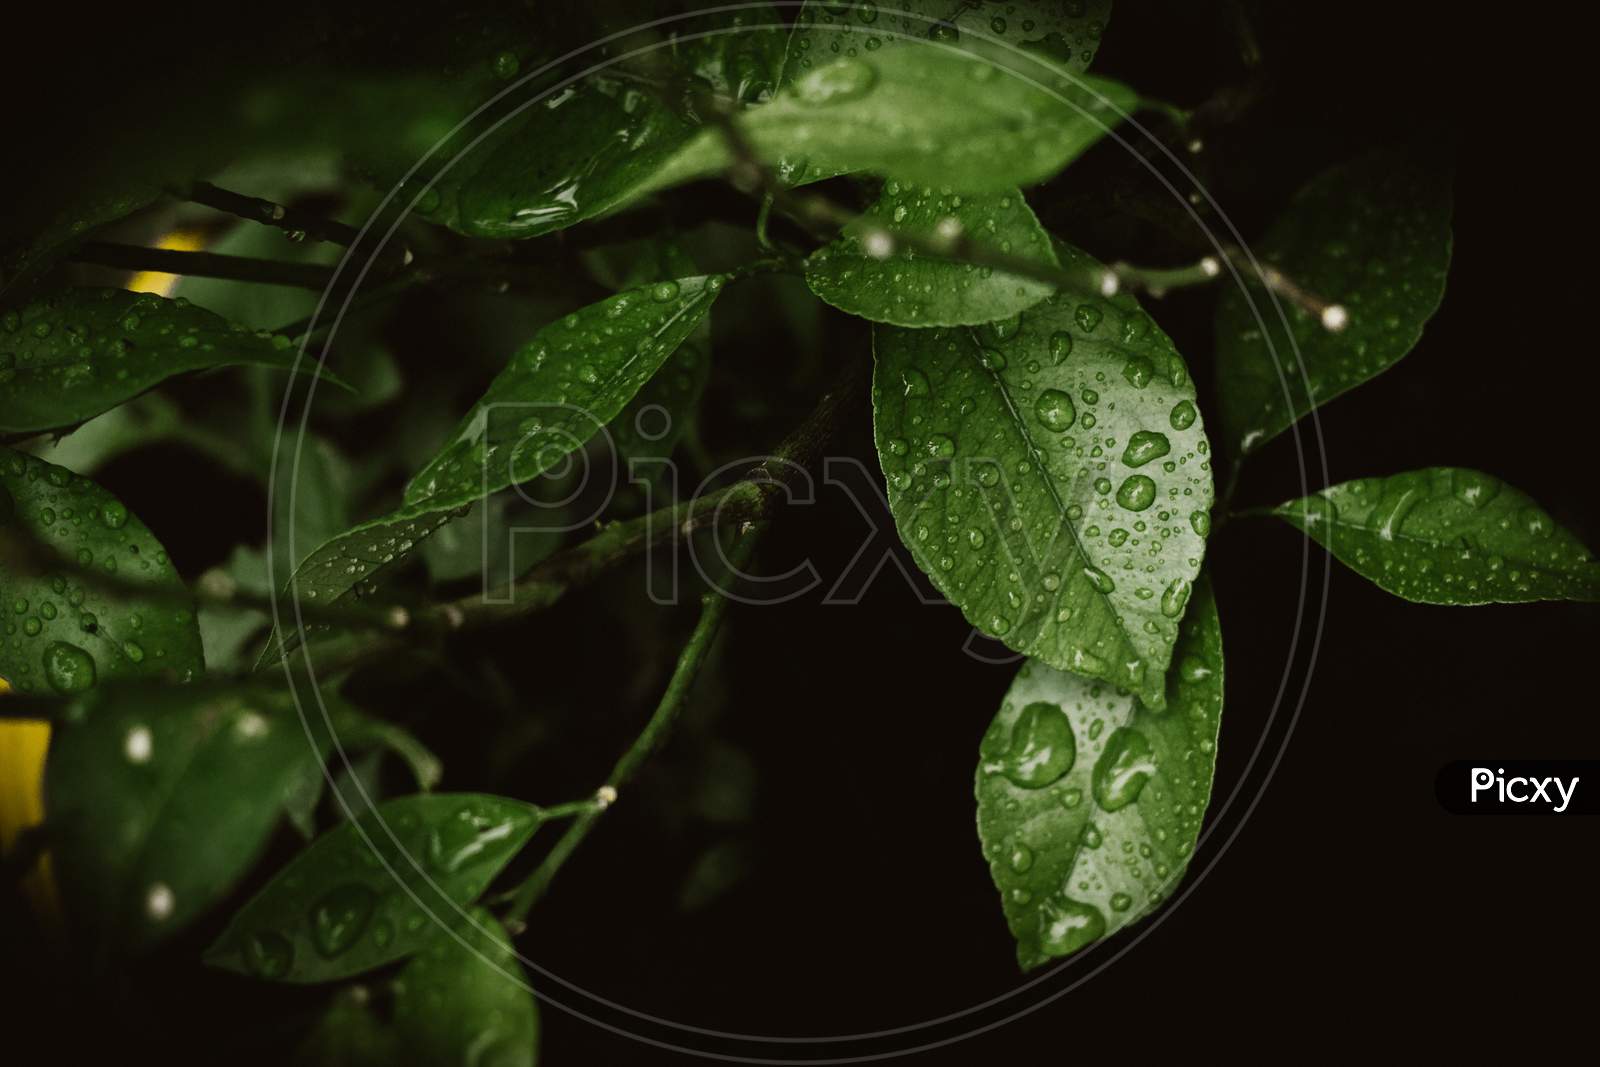 The green || Plant || dew || terrestrial || leaf